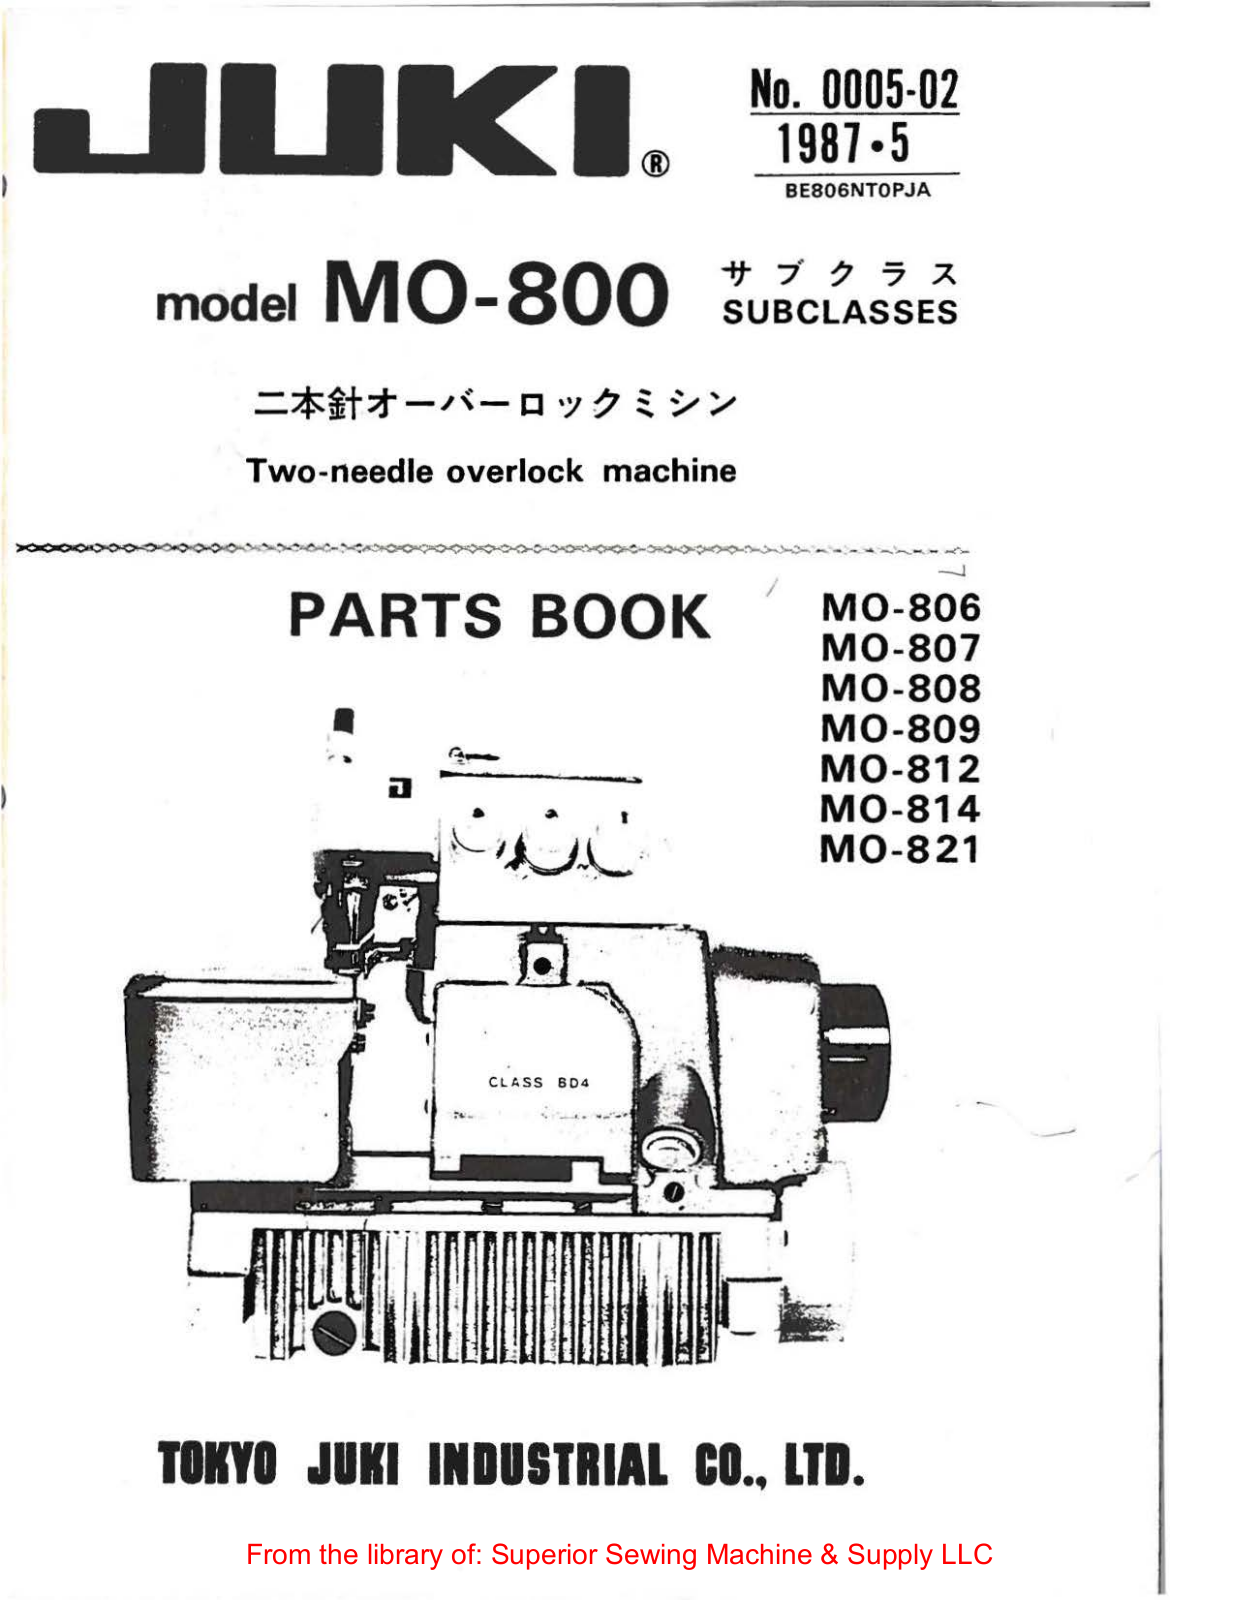 Juki M0-806, M0-807, M0-808, M0-809, M0-812 Manual